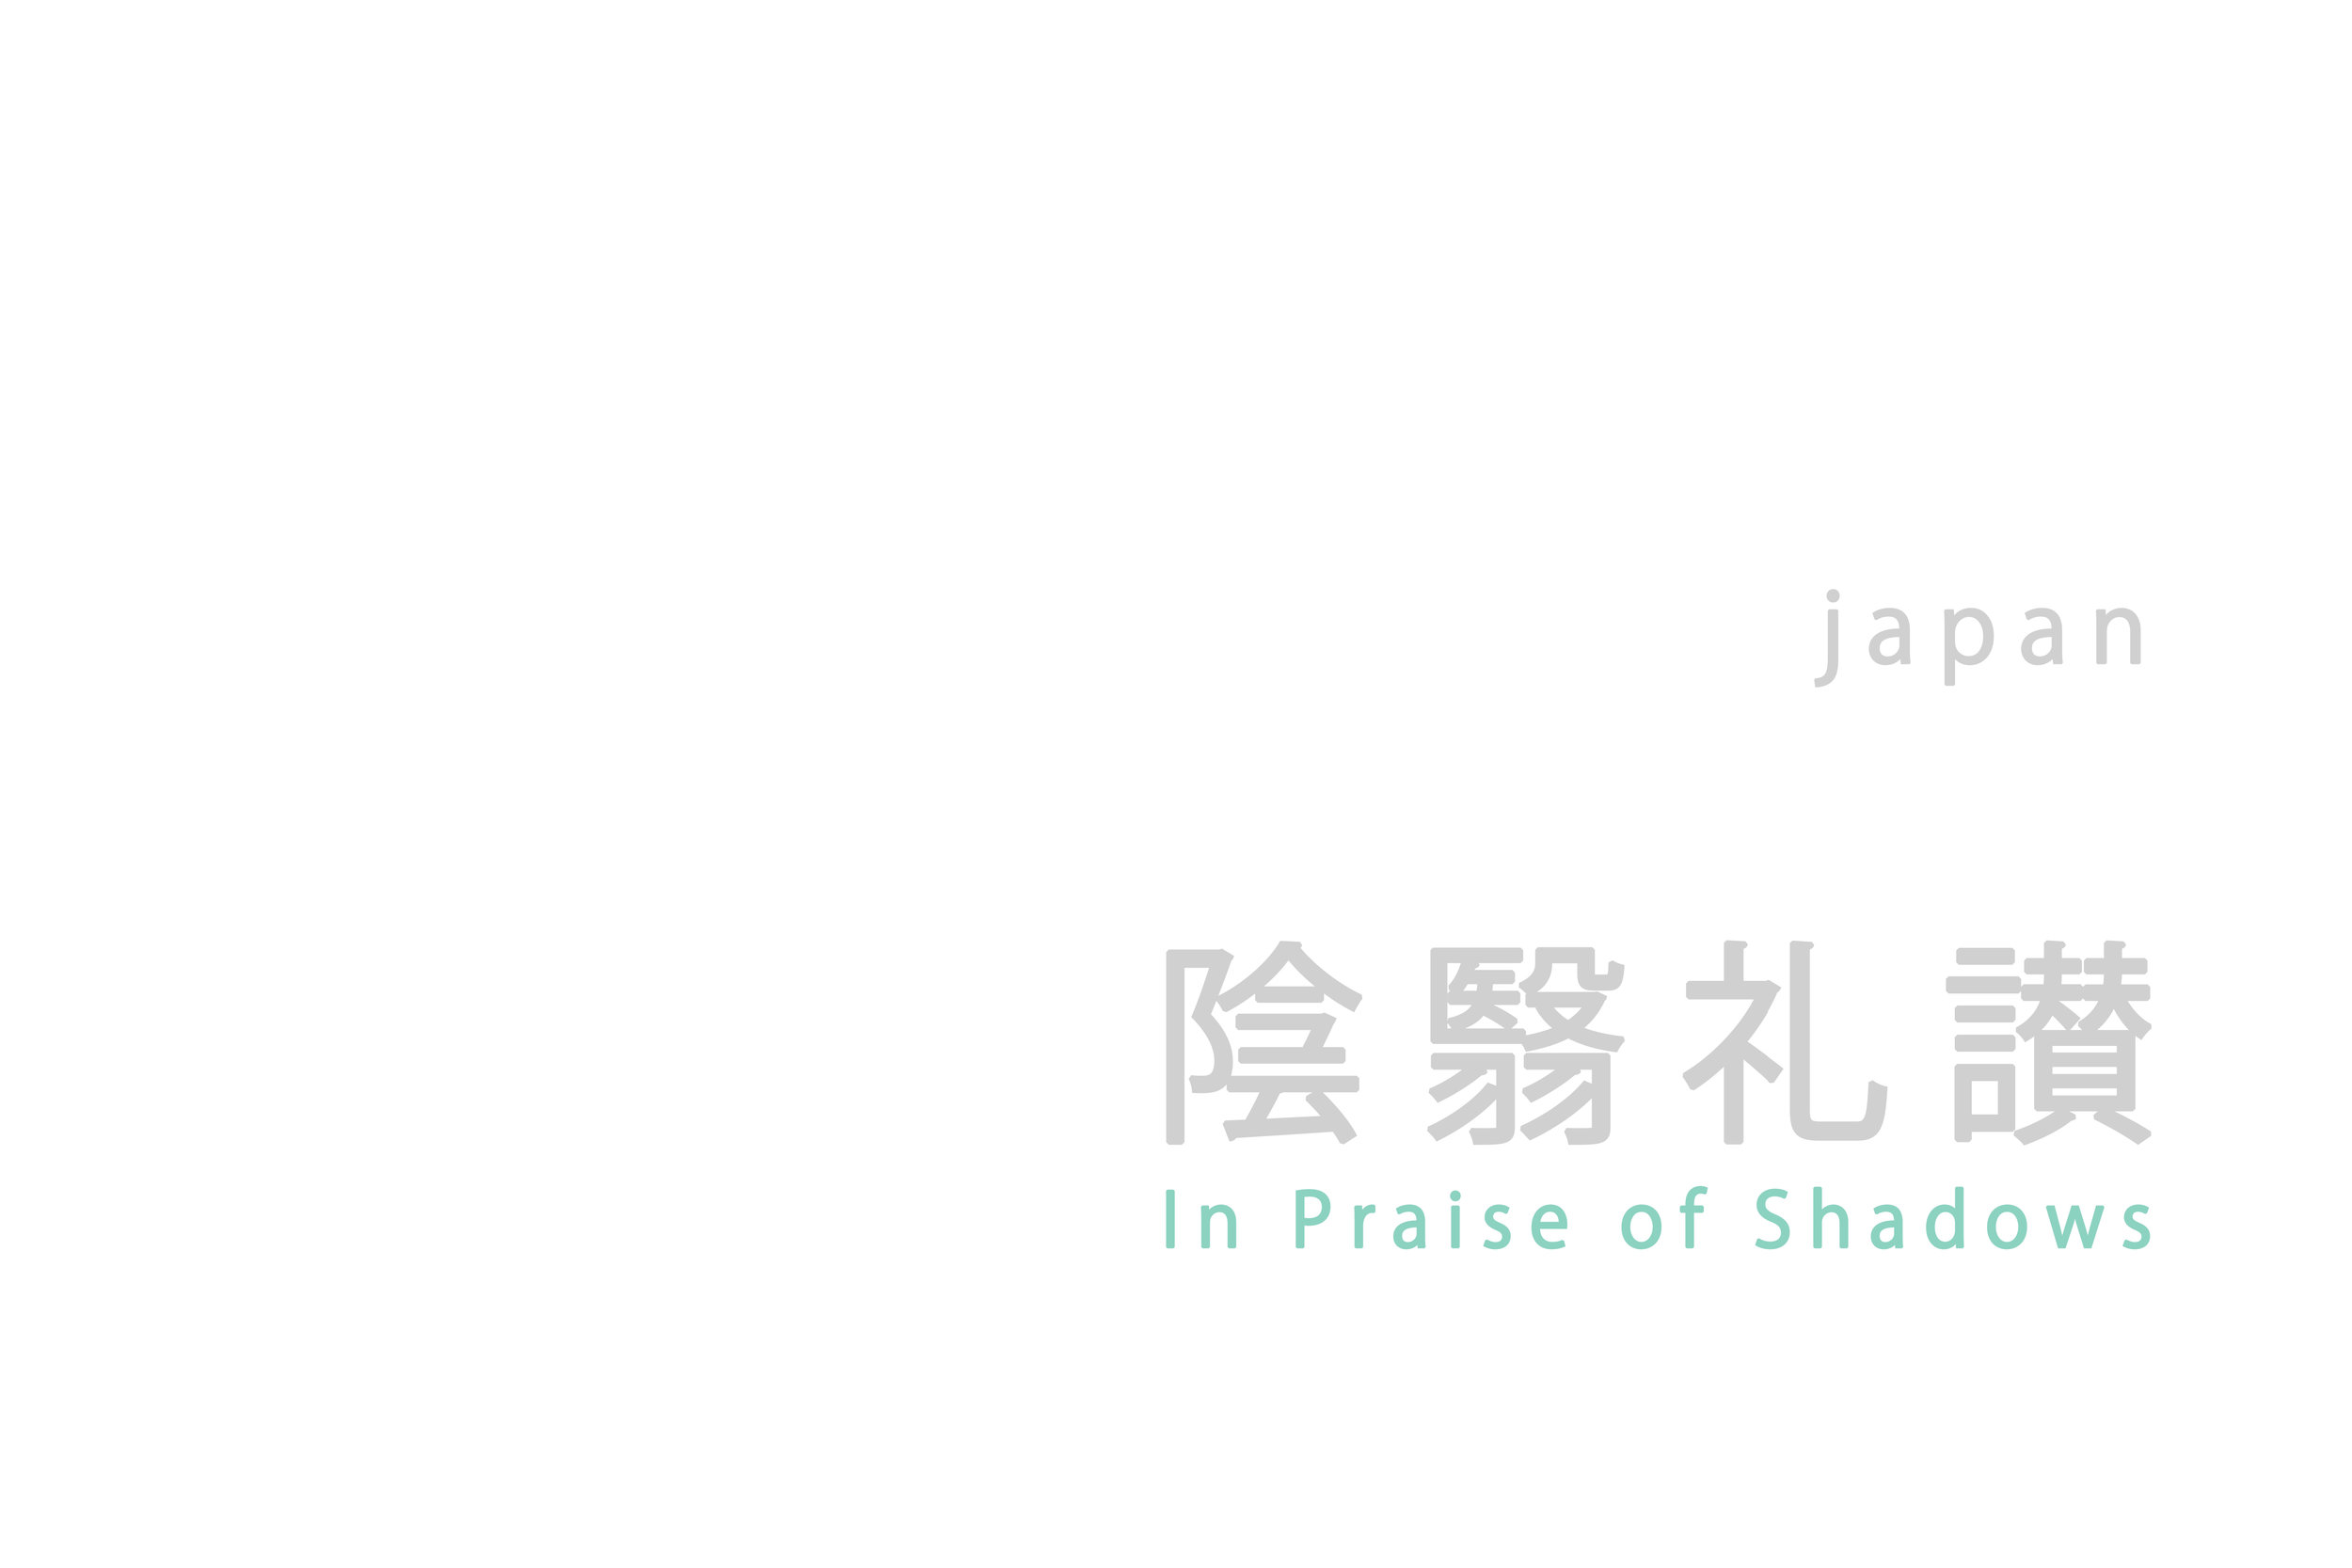 PraiseShadows00.jpg